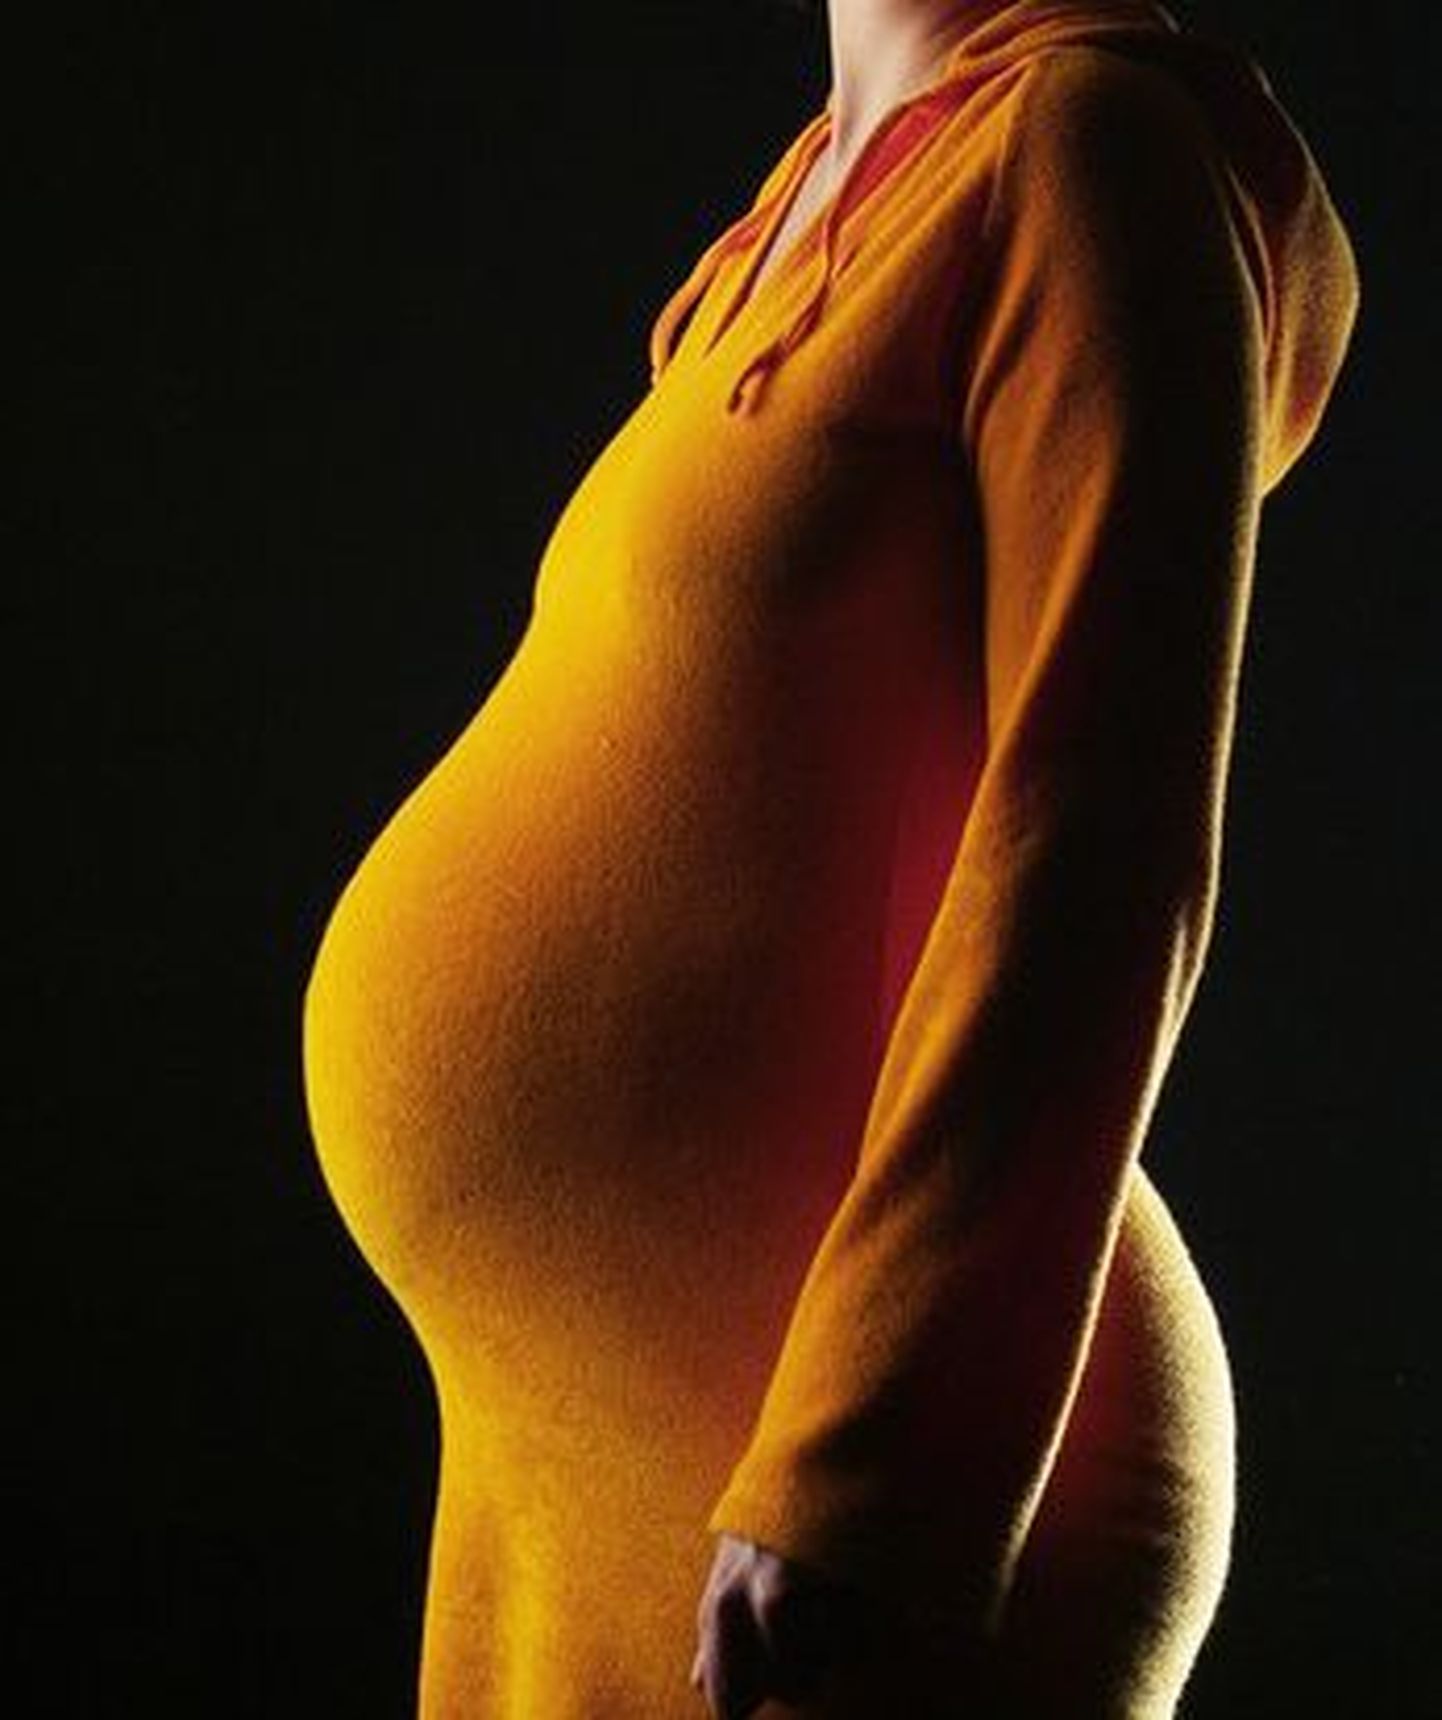 USAs jäi juba rase naine uuesti rasedaks